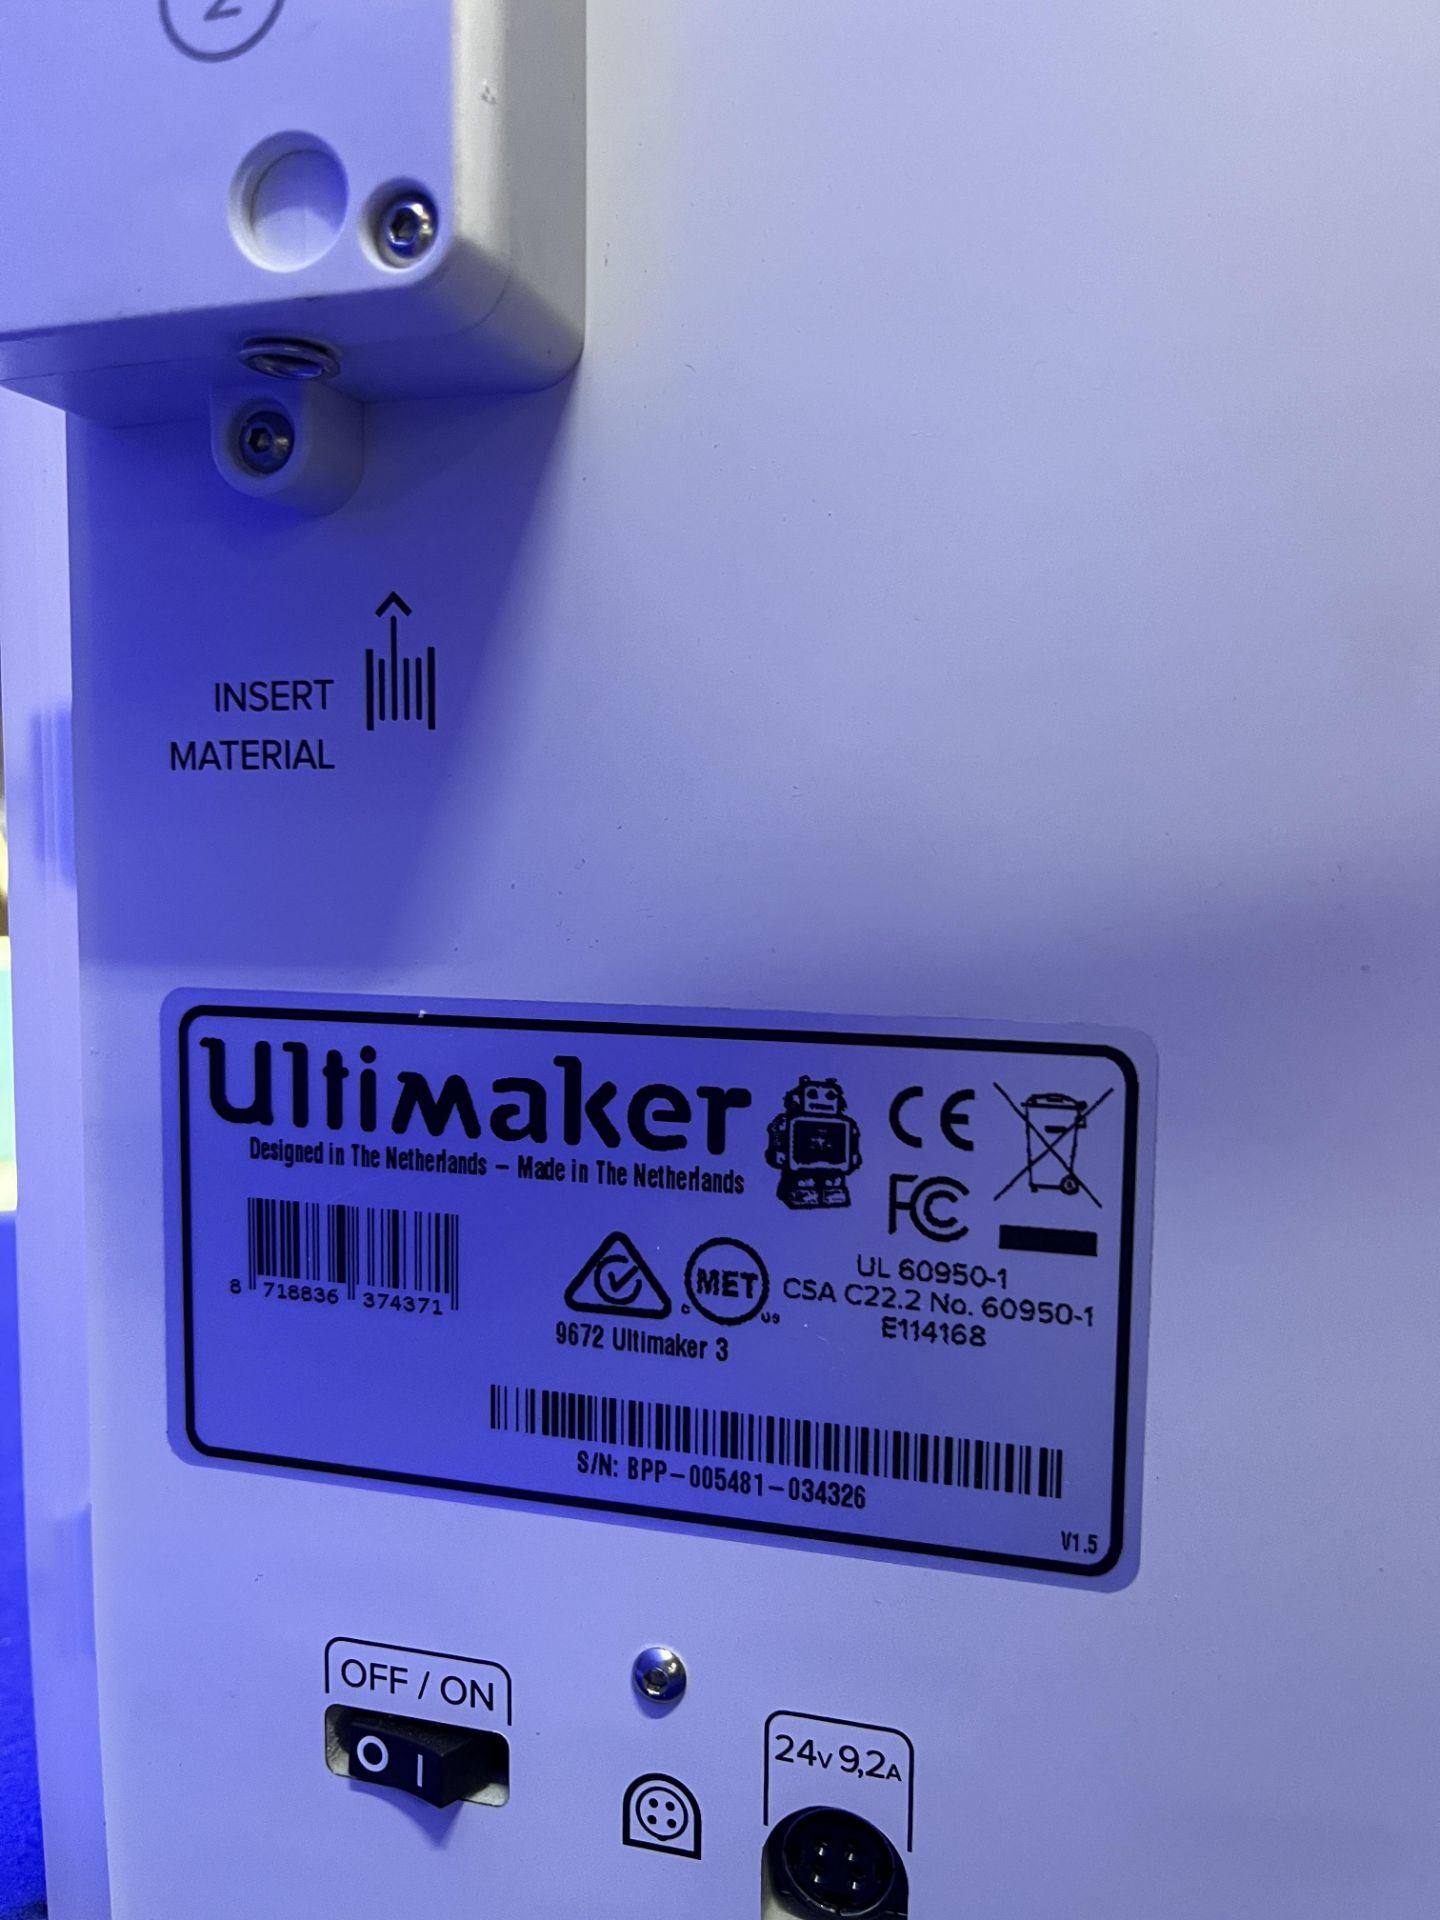 Ultimaker Model 3 3D printer - Image 4 of 4